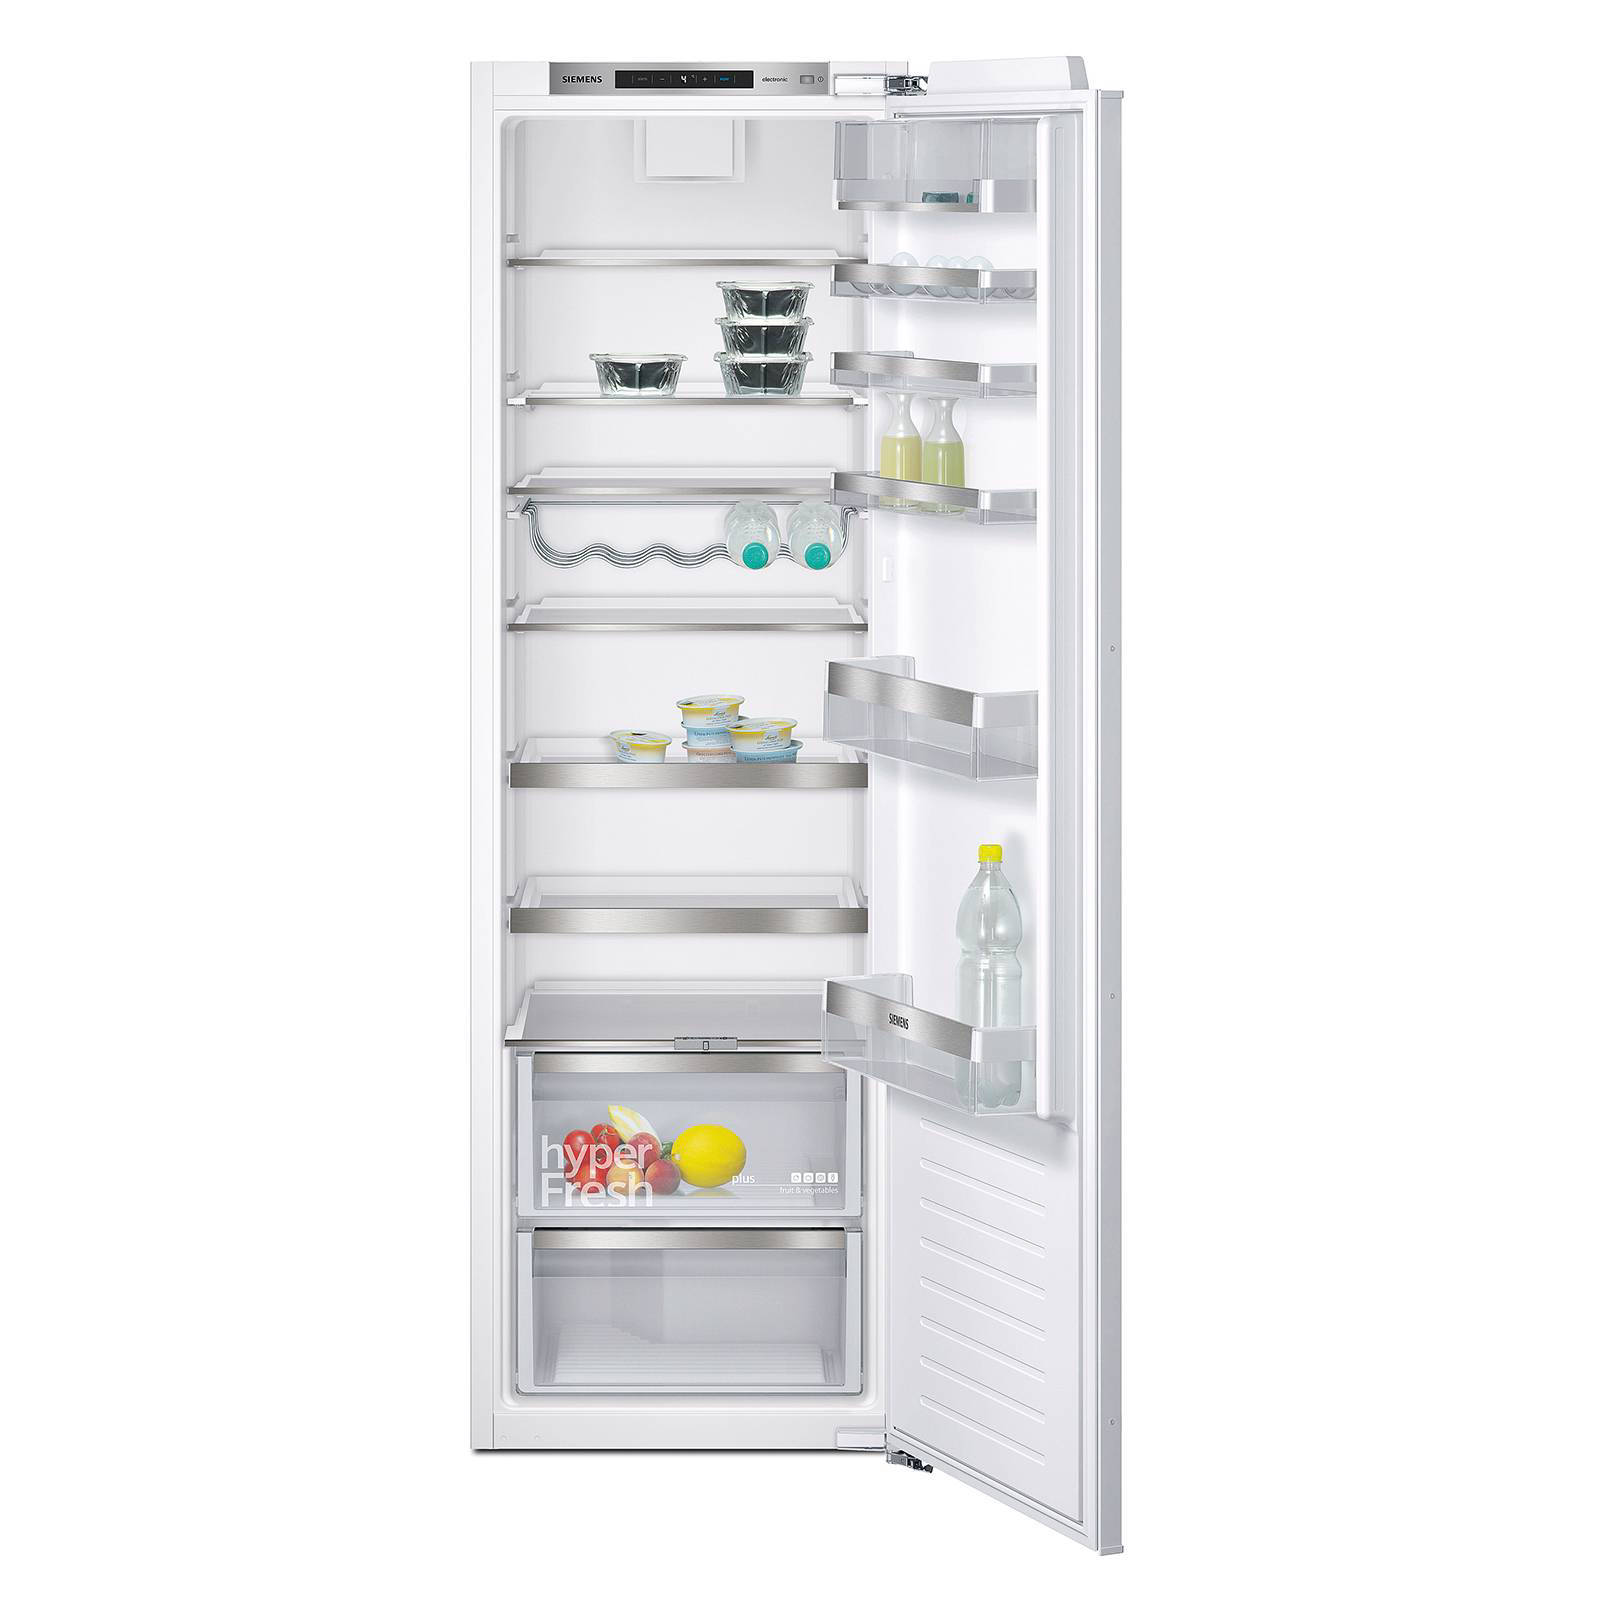 Siemens KI81RAD30 inbouw koelkast met hyperFresh Plus lade en flessenrooster online kopen